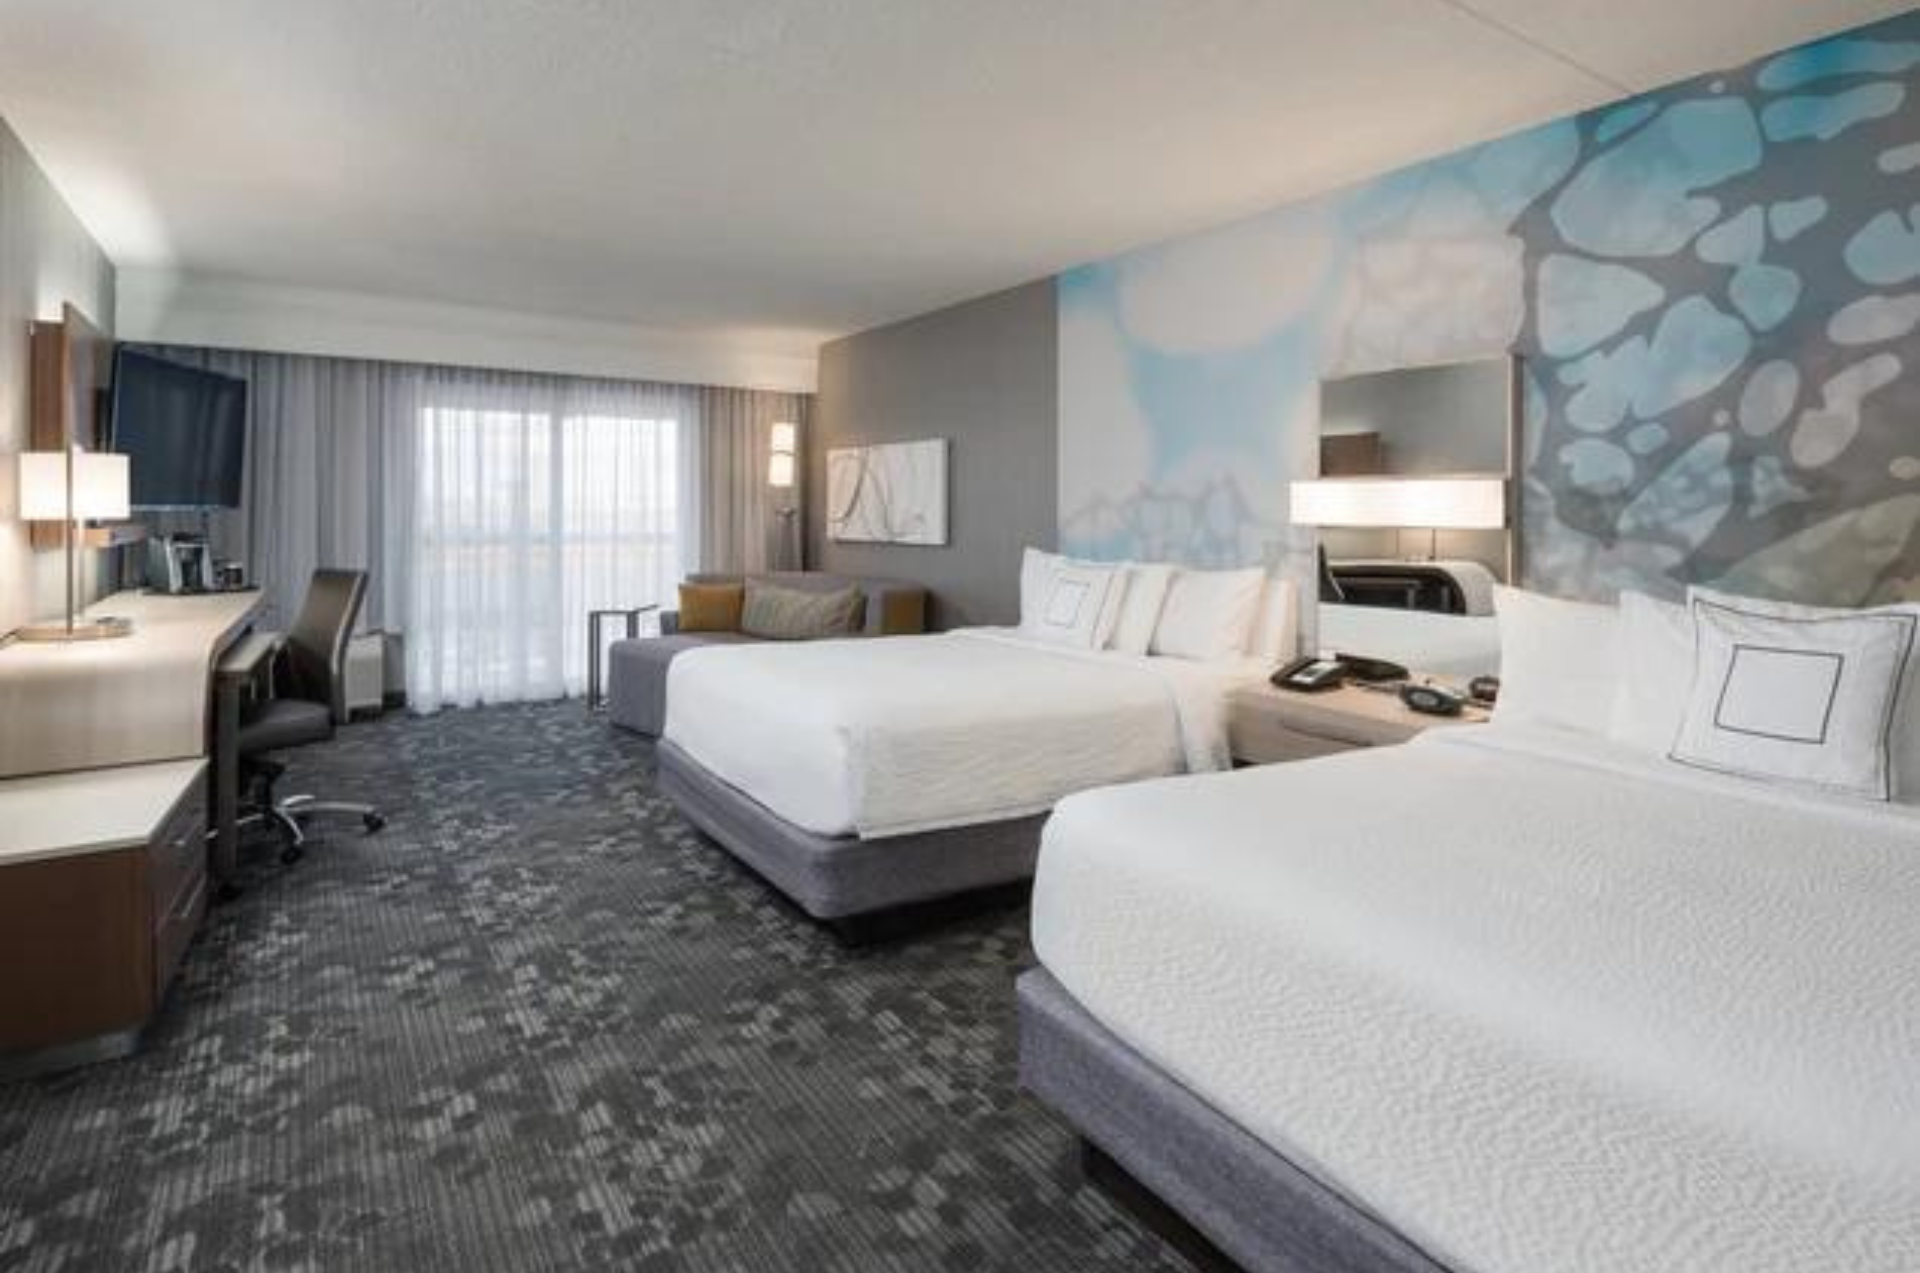 Marriot hotel, two queen size bedroom / Hôtel Marriot, deux chambres à coucher à lit double 